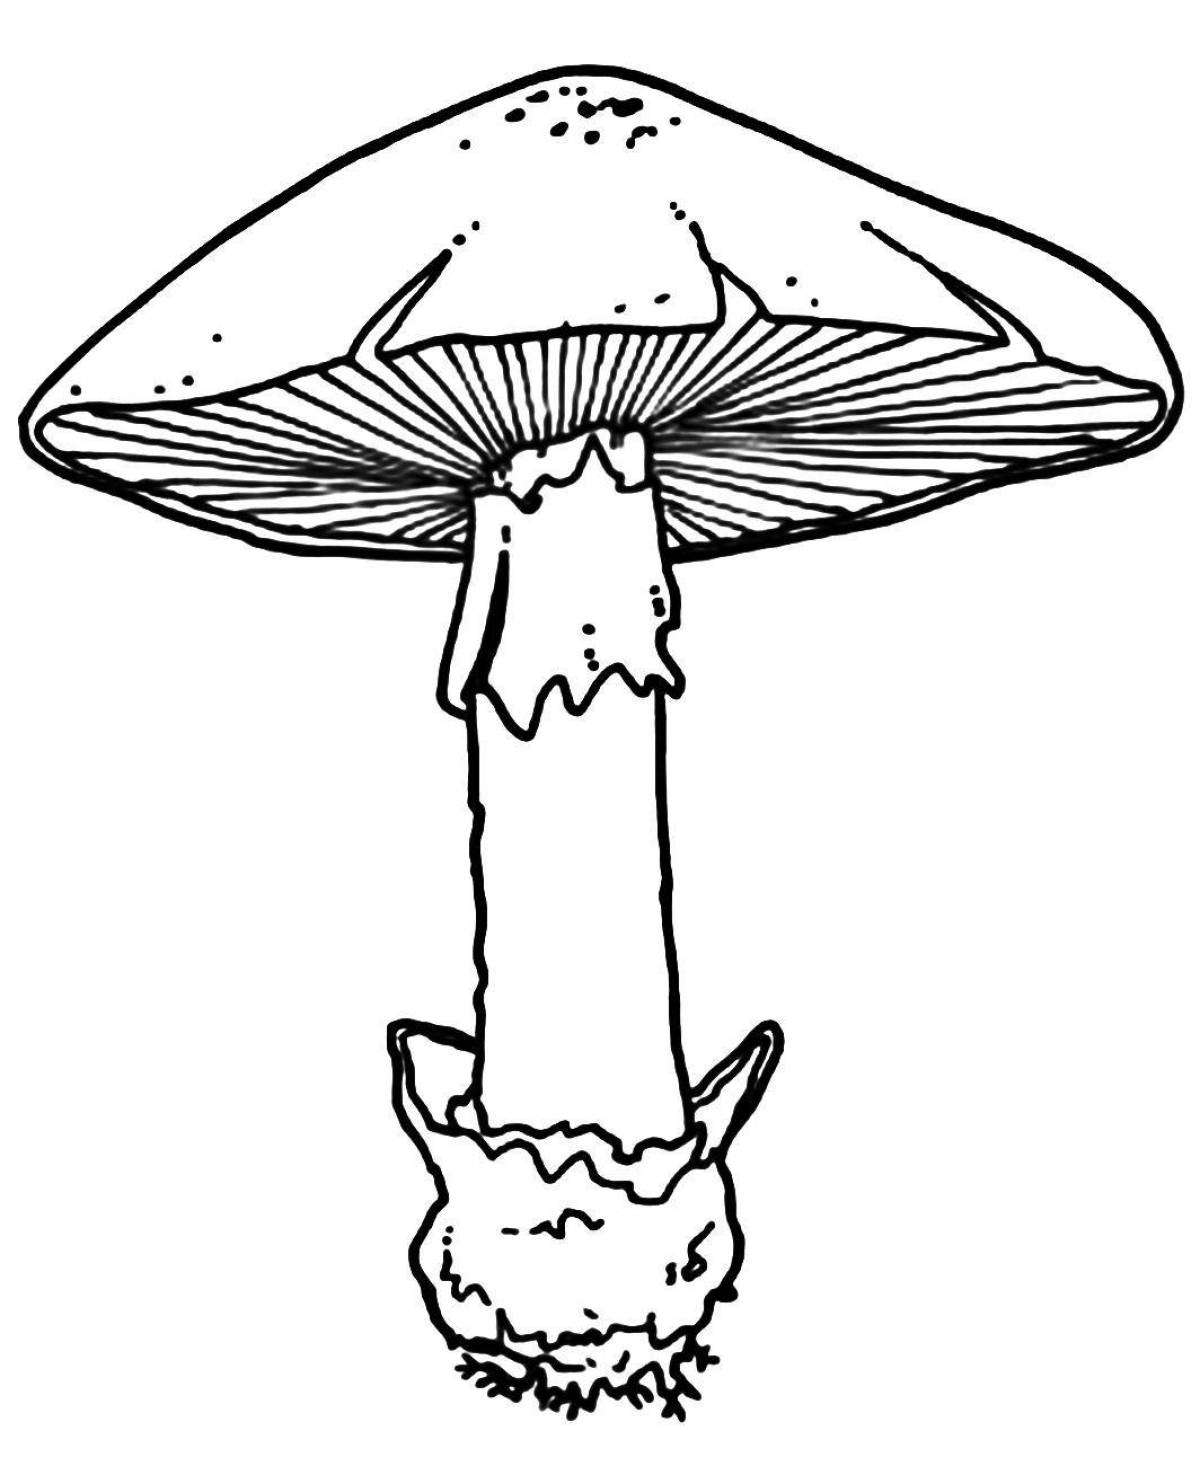 Radiant toadstool mushrooms